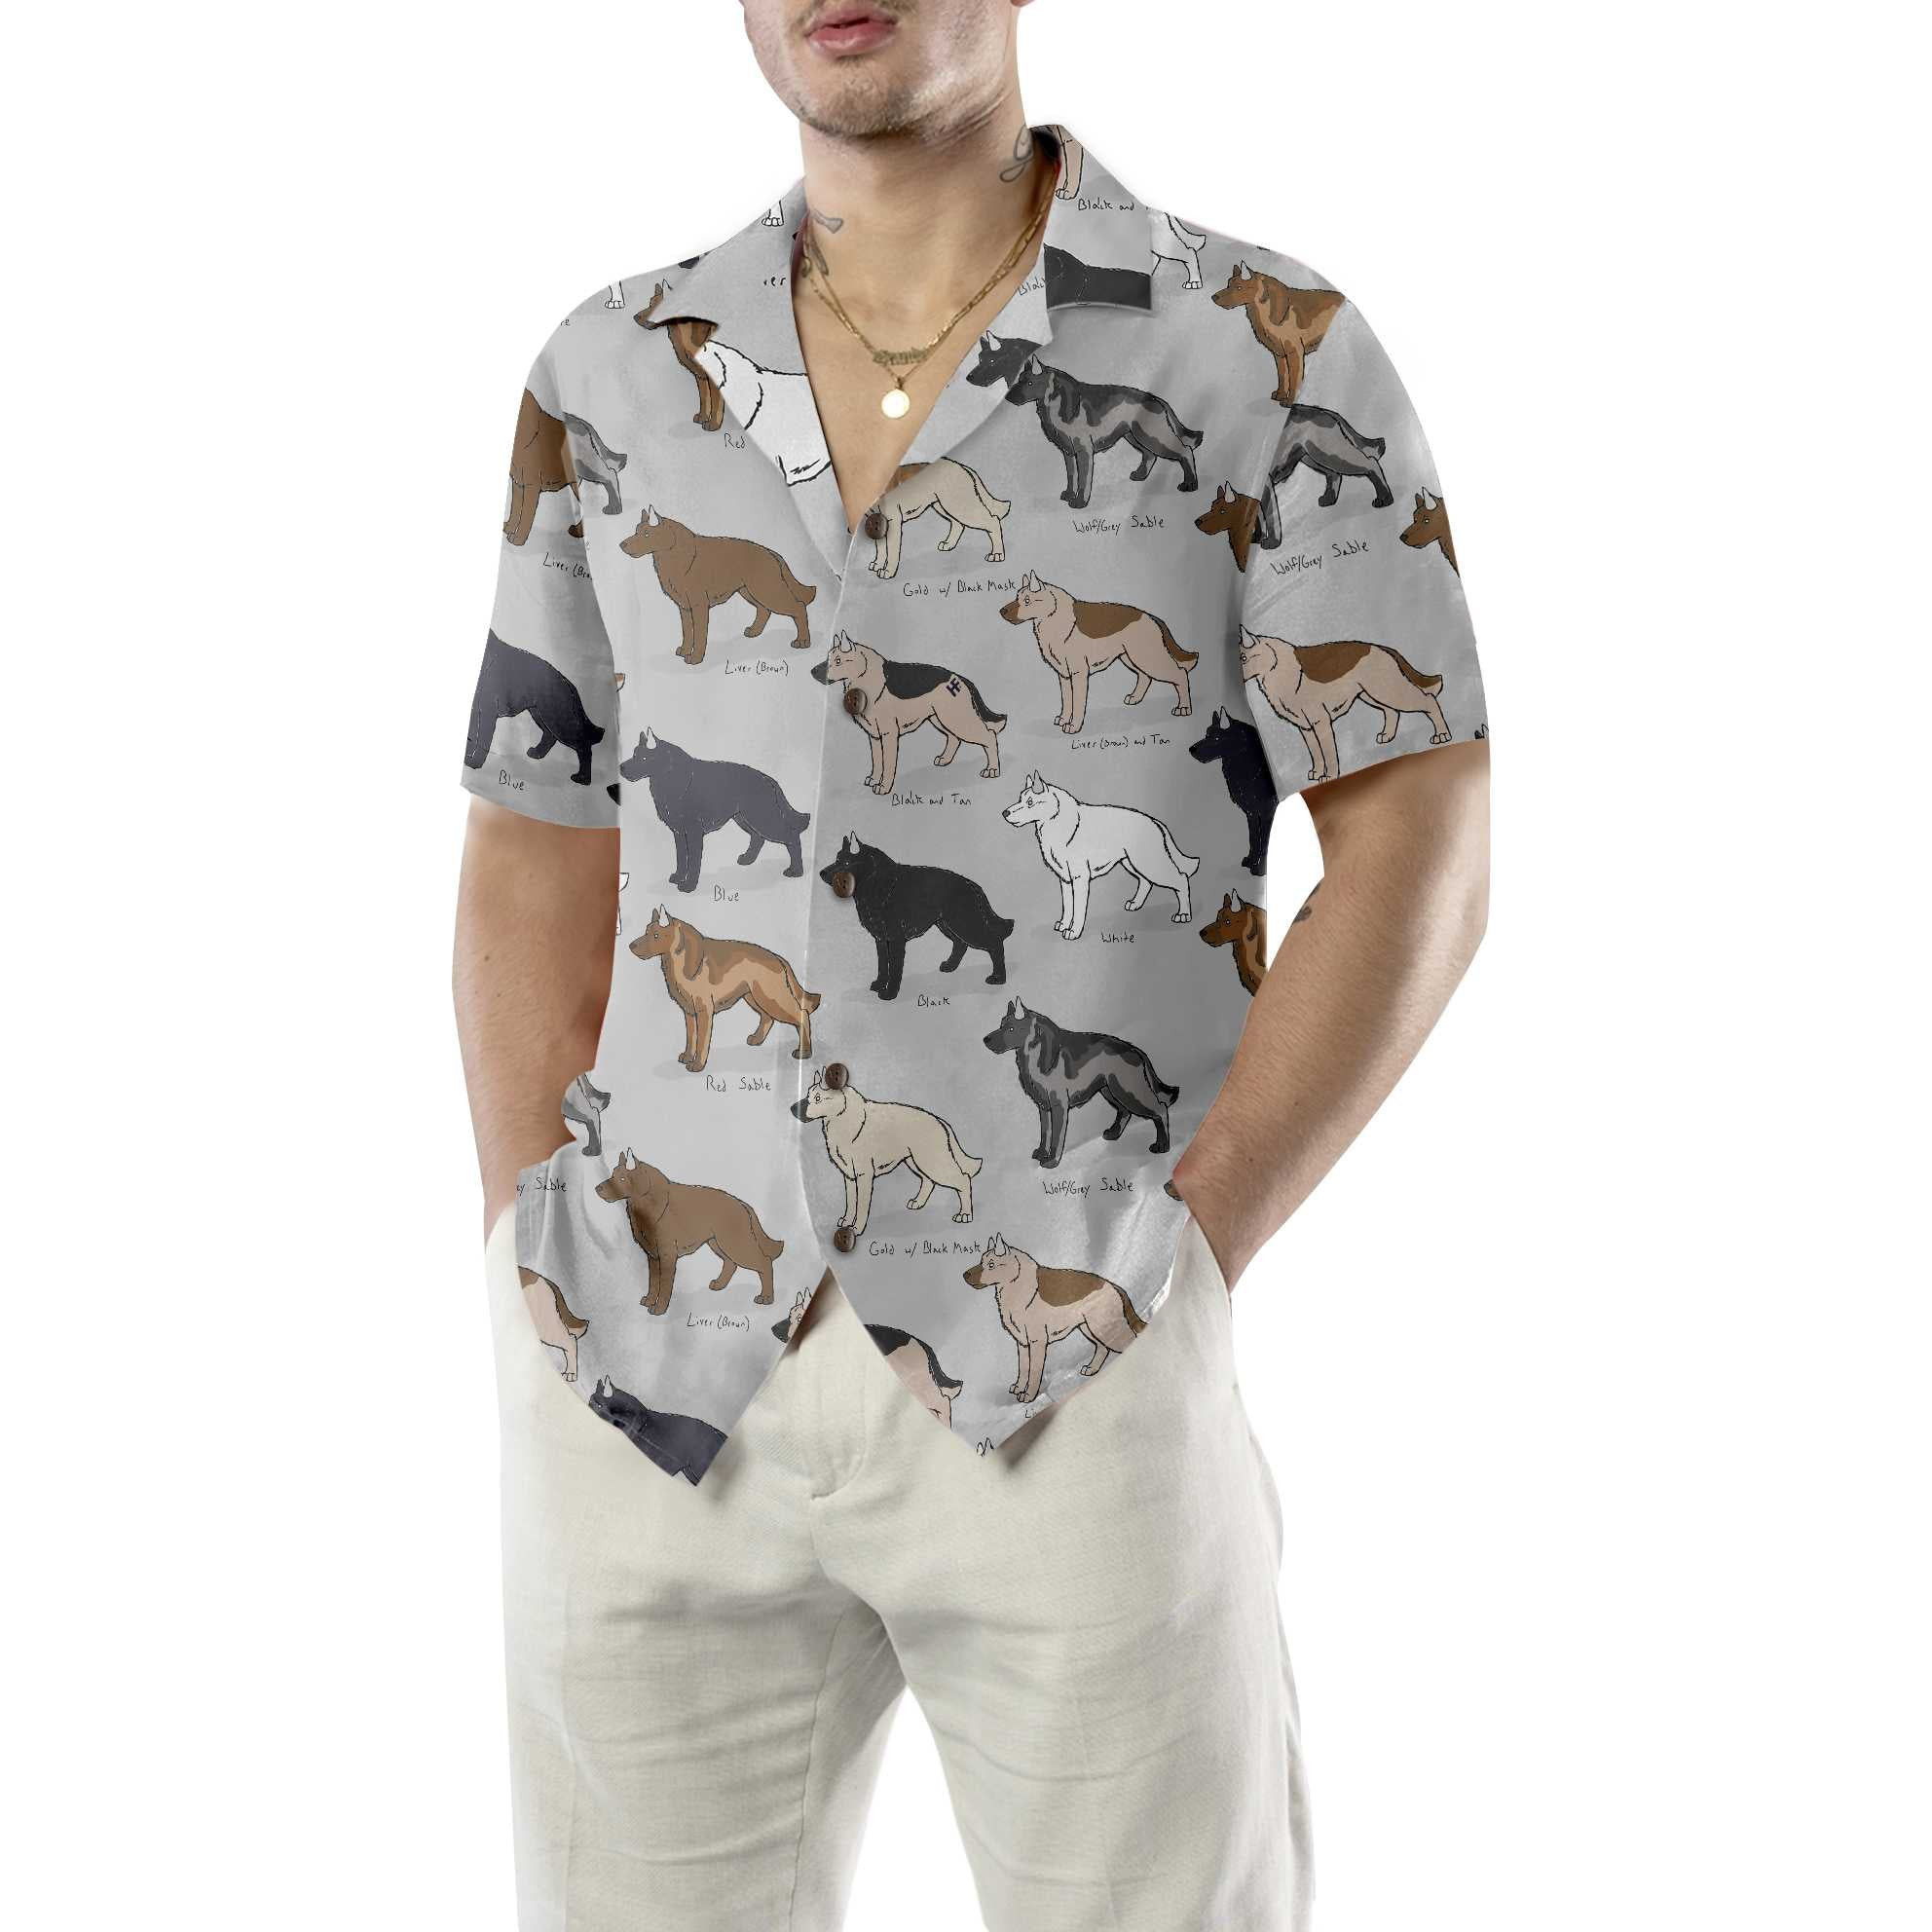 German Shepherd Dog Hawaiian Shirt, Funny German Shepherd Shirt, Dog Hawaiian Shirt For Adults